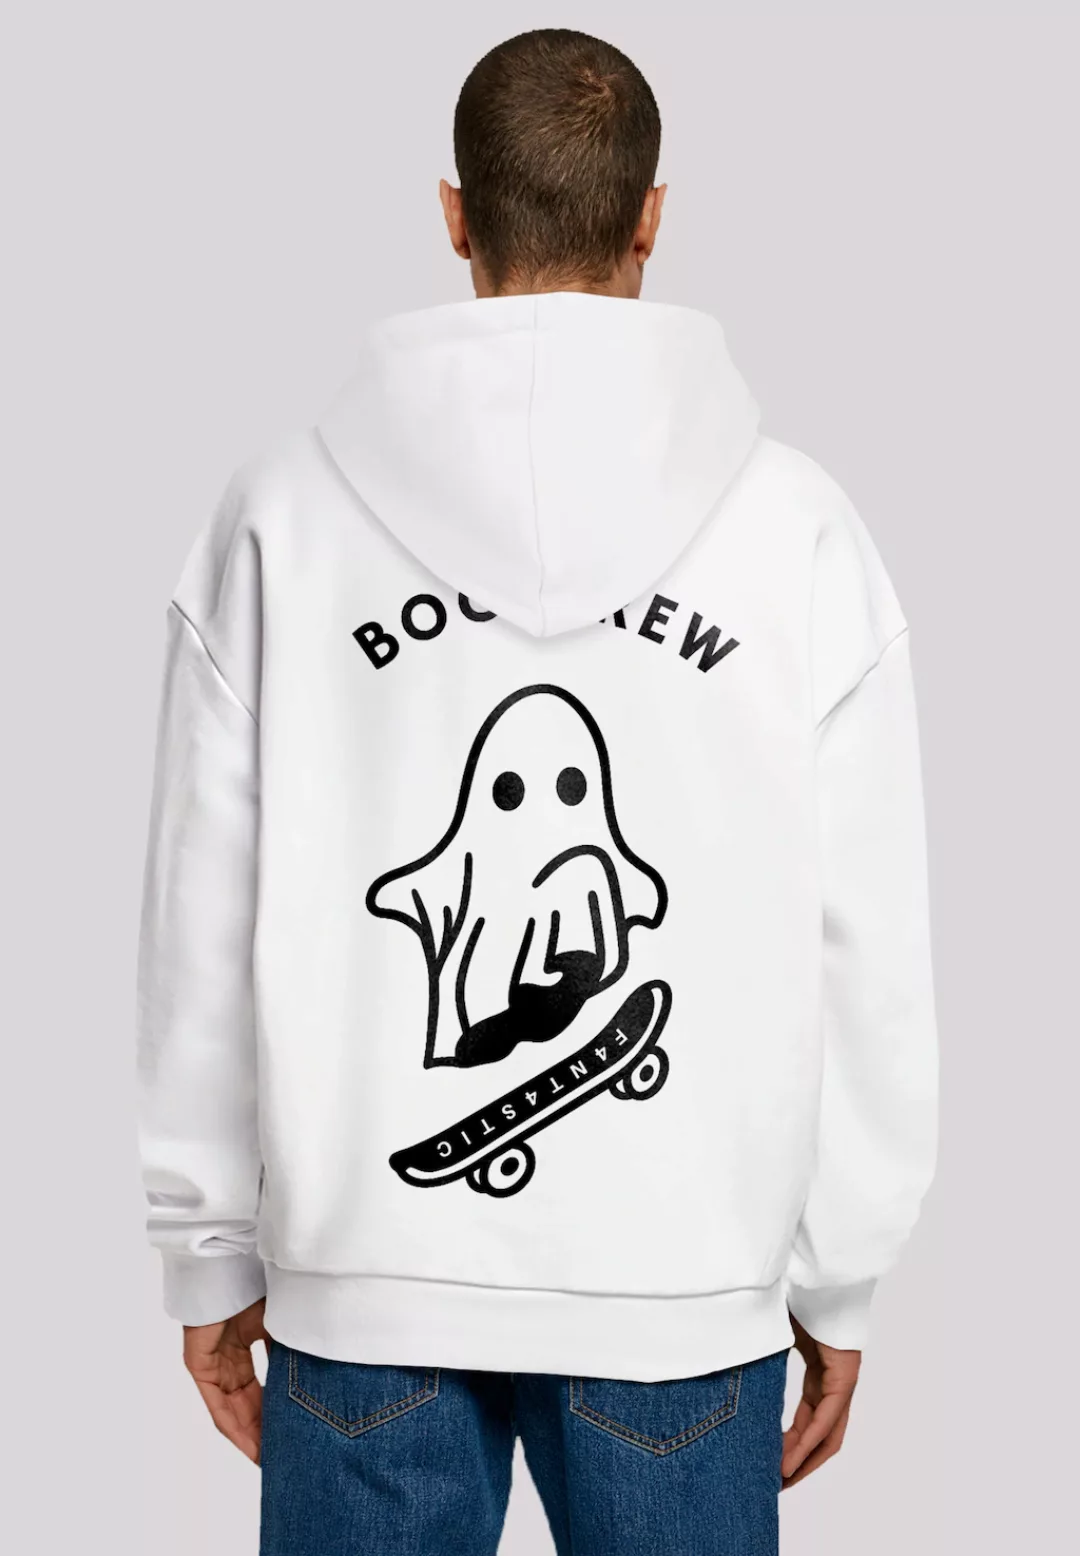 F4NT4STIC Kapuzenpullover "Boo Crew Halloween" günstig online kaufen